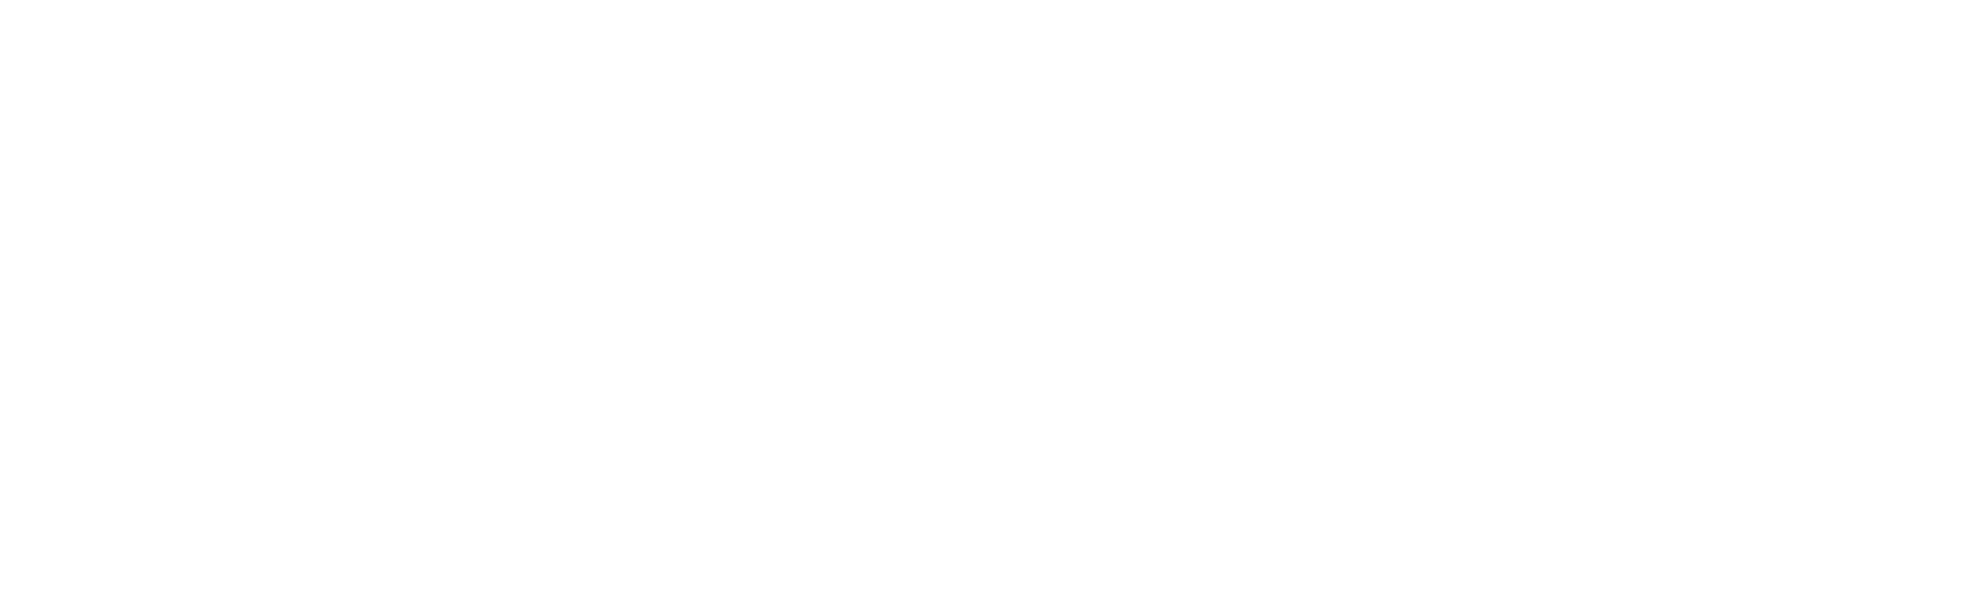 SpecialOlympicsHawaii-WHT